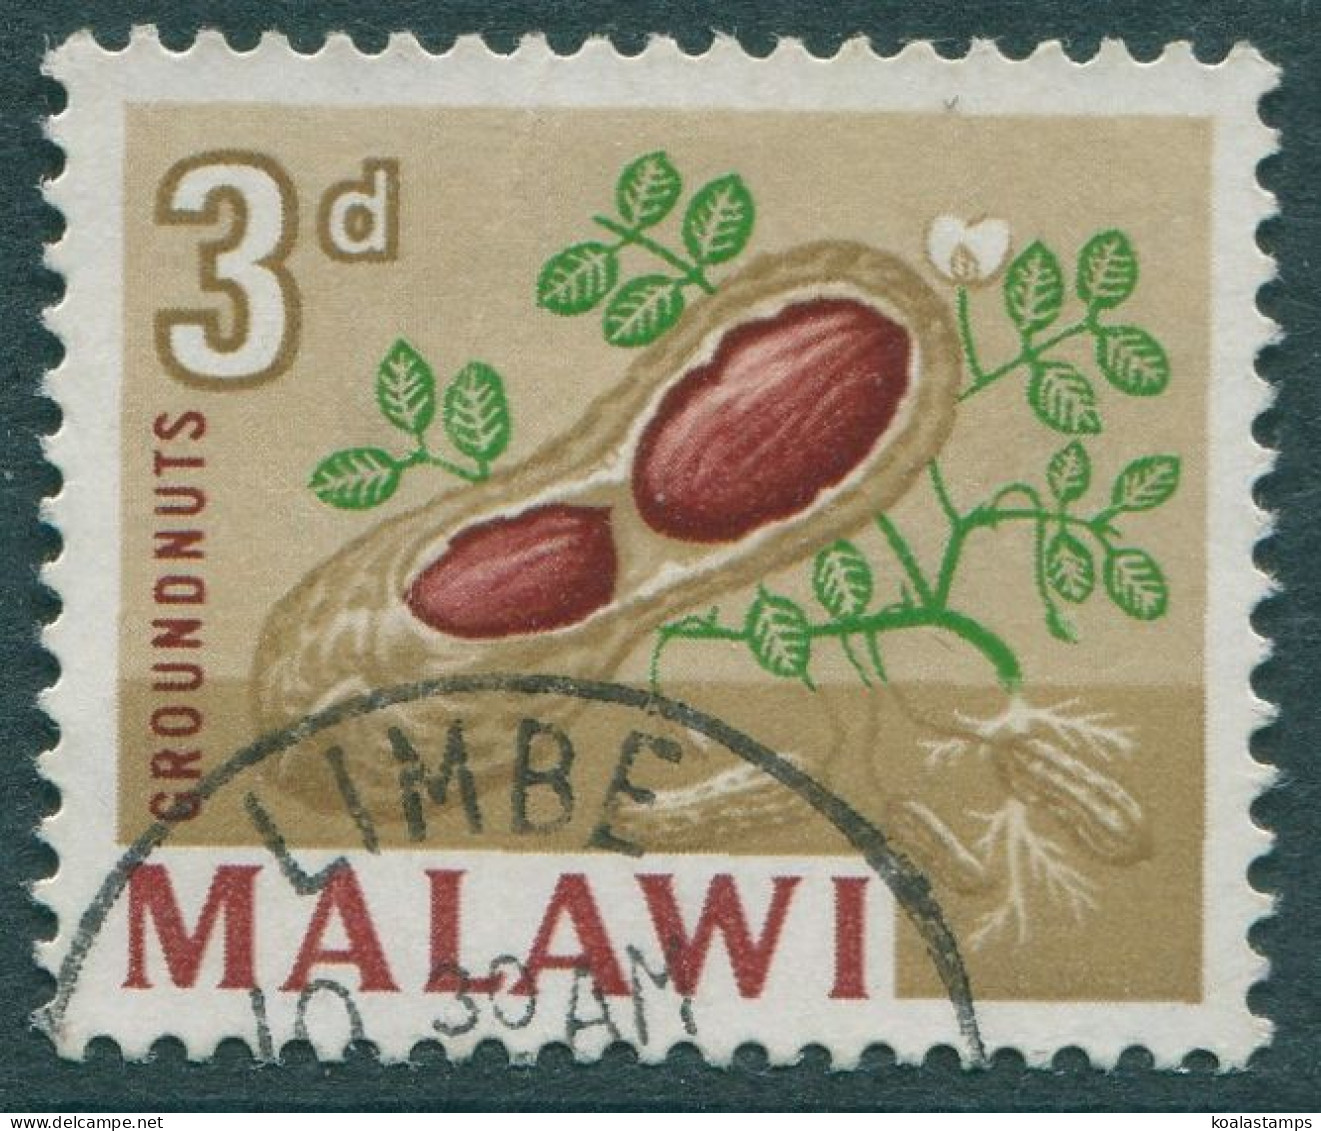 Malawi 1964 SG218 3d Groundnuts FU - Malawi (1964-...)